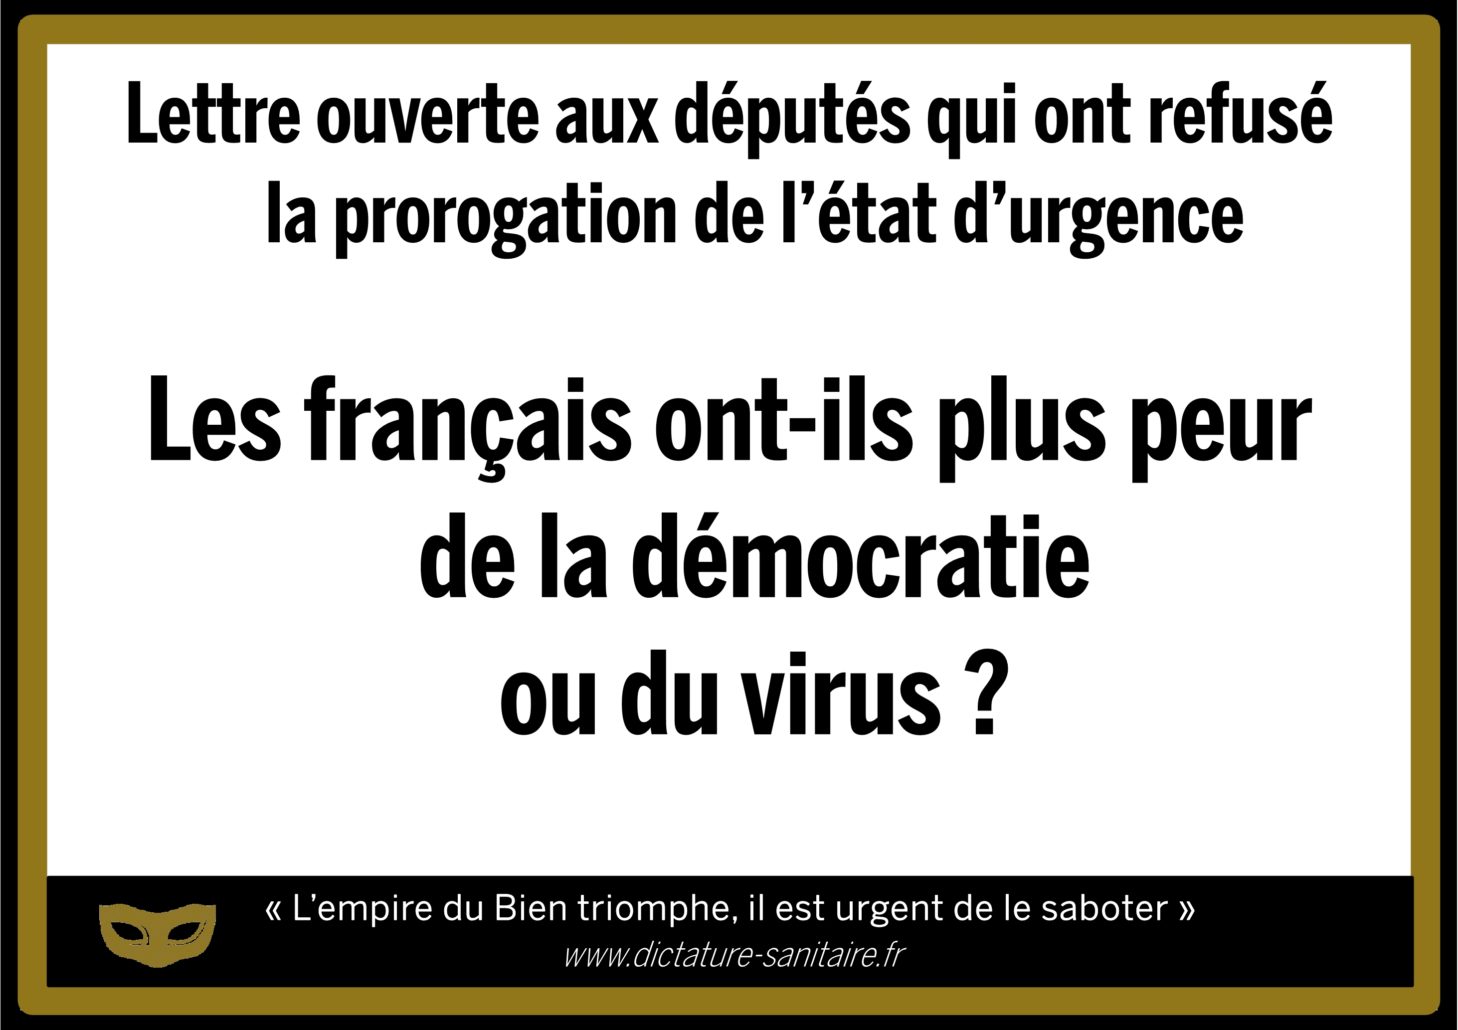 Lettre ouverte aux députés. Les français ont-ils plus peur de la démocratie ou du virus ?